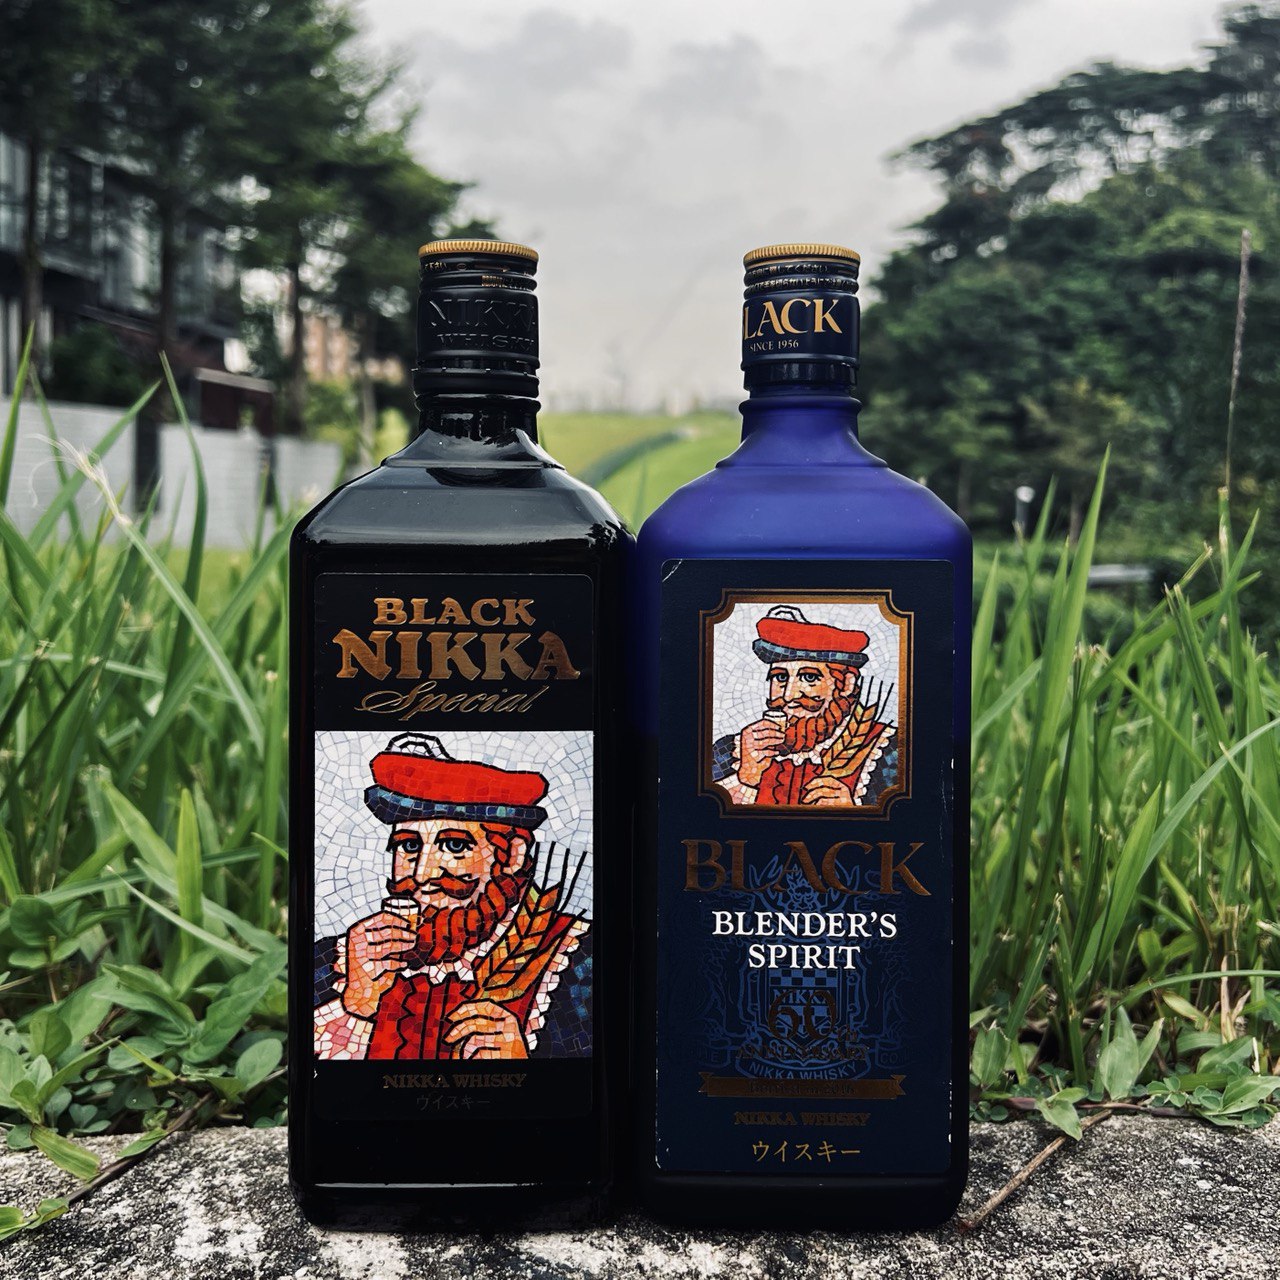 Nikka Black Deep Blend Whisky, Japanese Whisky